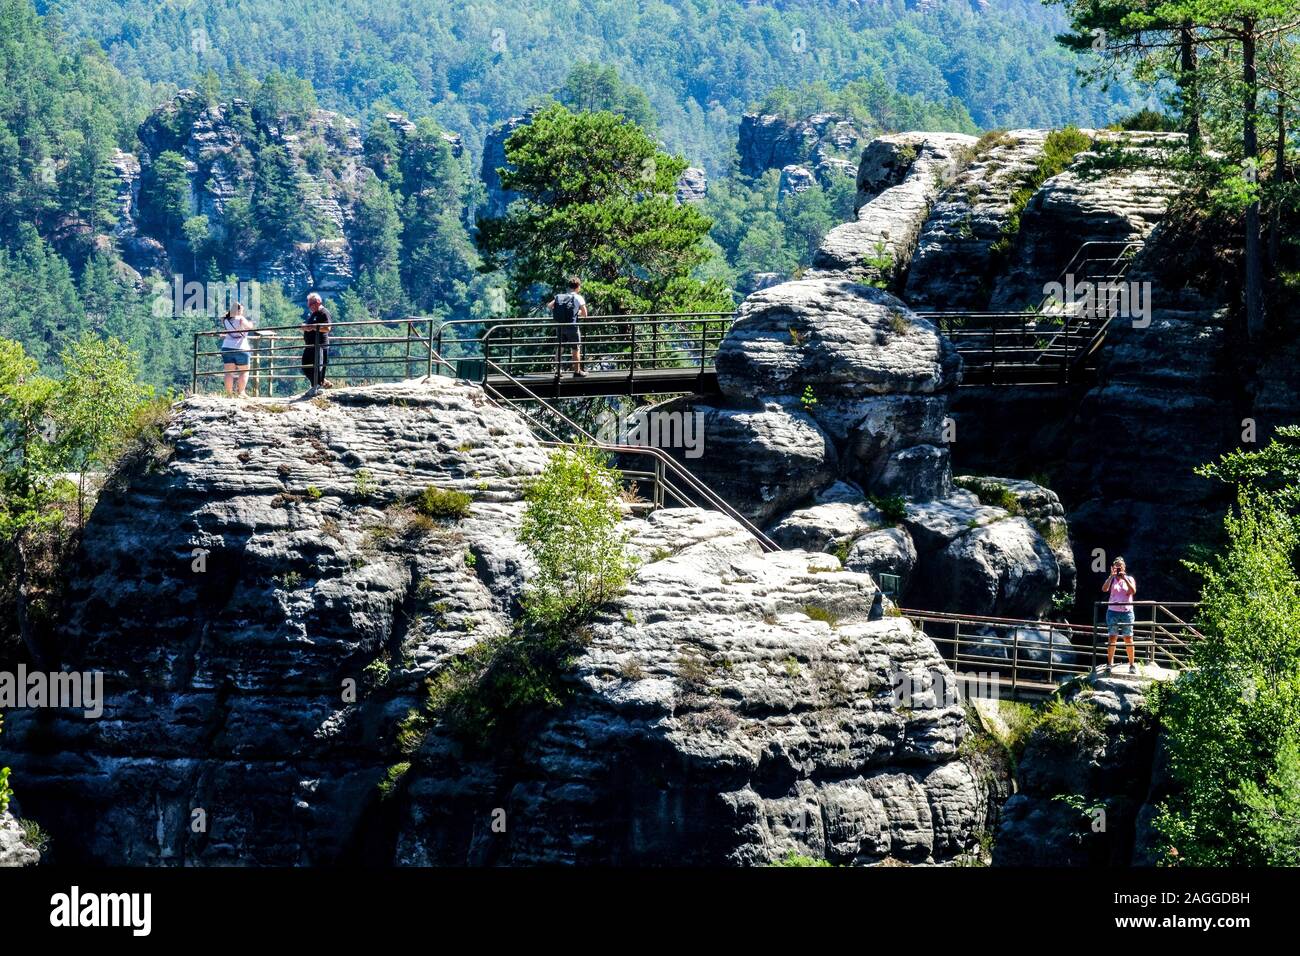 Elbsandsteingebirge Sächsische Schweiz Nationalpark Deutschland Menschen, die auf dem Weg in den Sandsteingipfeln wandern Felsen Sommerlandschaft Deutsch Stockfoto